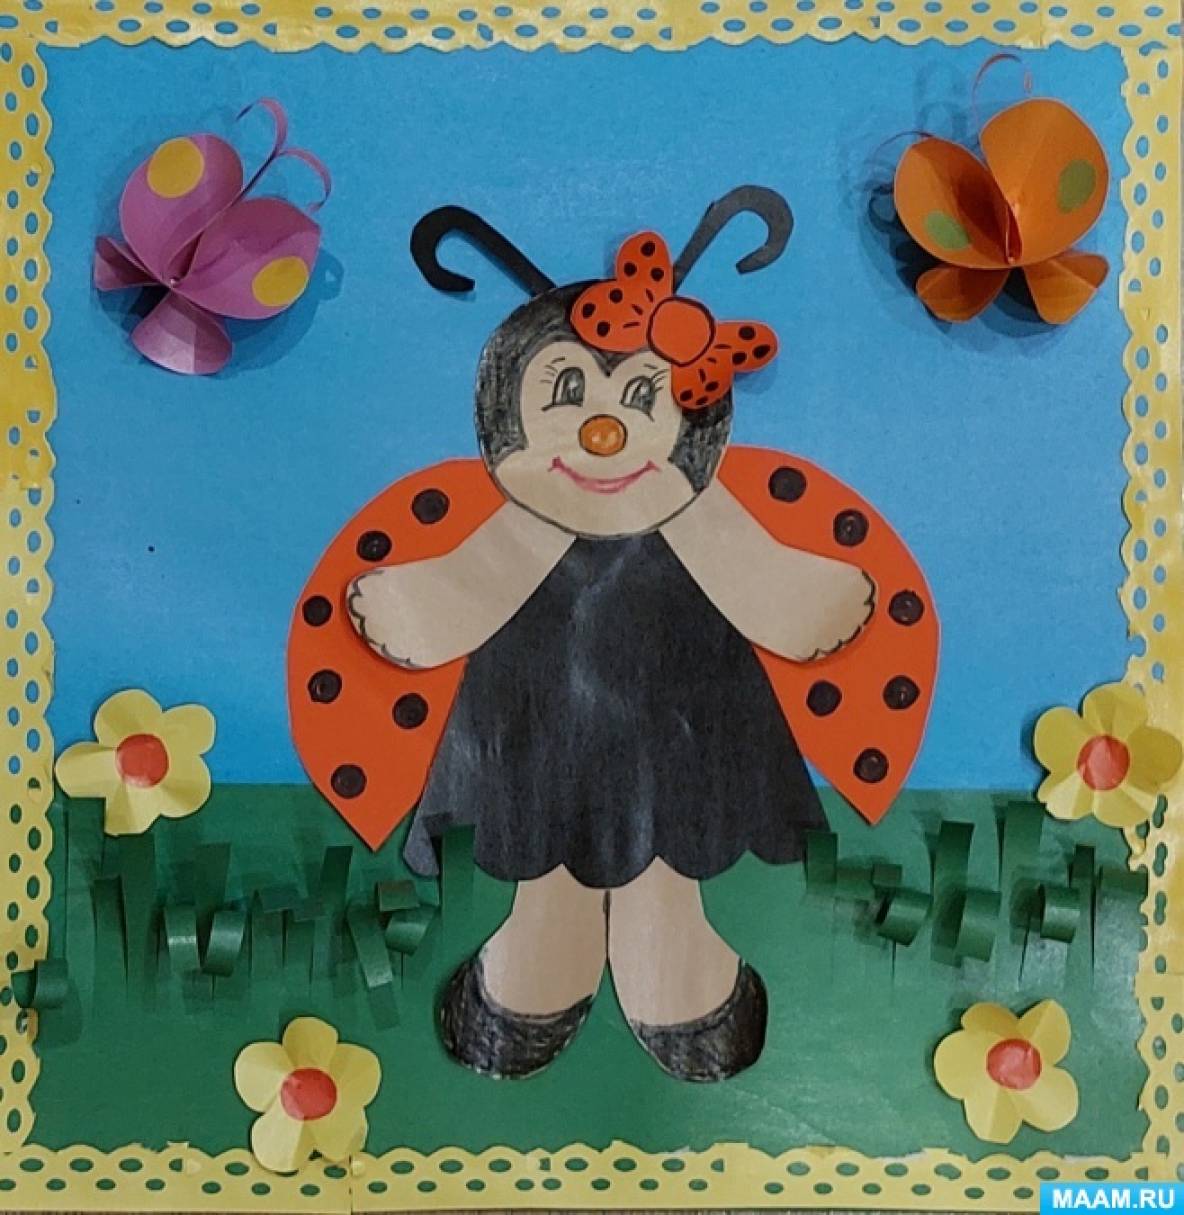 Мастер-класс по аппликации из цветной бумаги «Божья коровка на полянке» для детей старшего дошкольного возраста